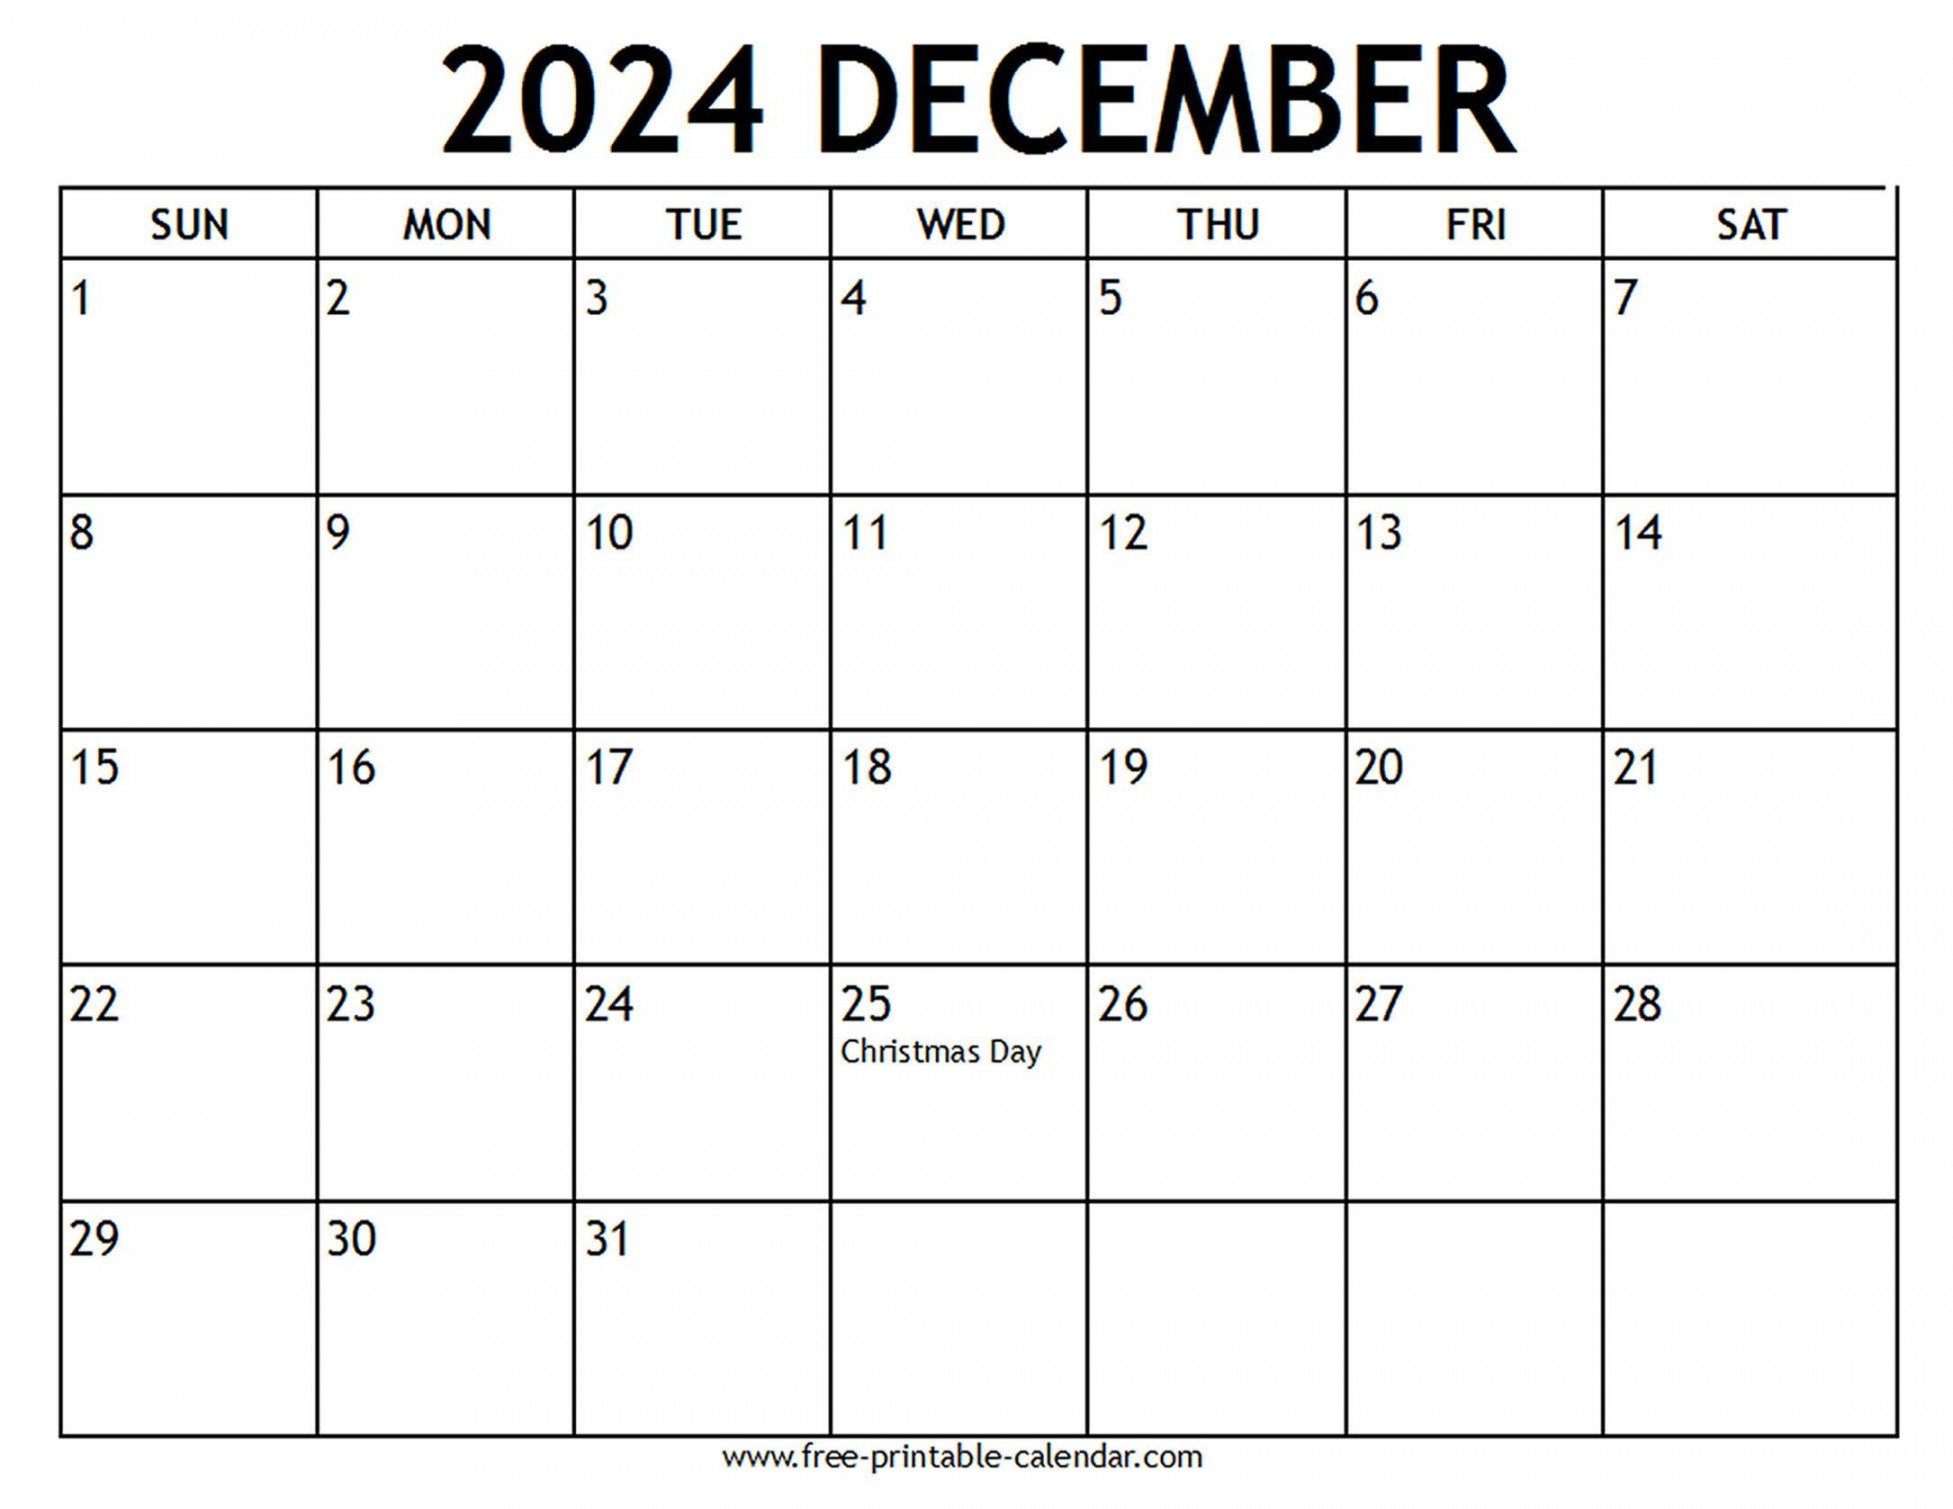 december calendar us holidays free printable calendar com